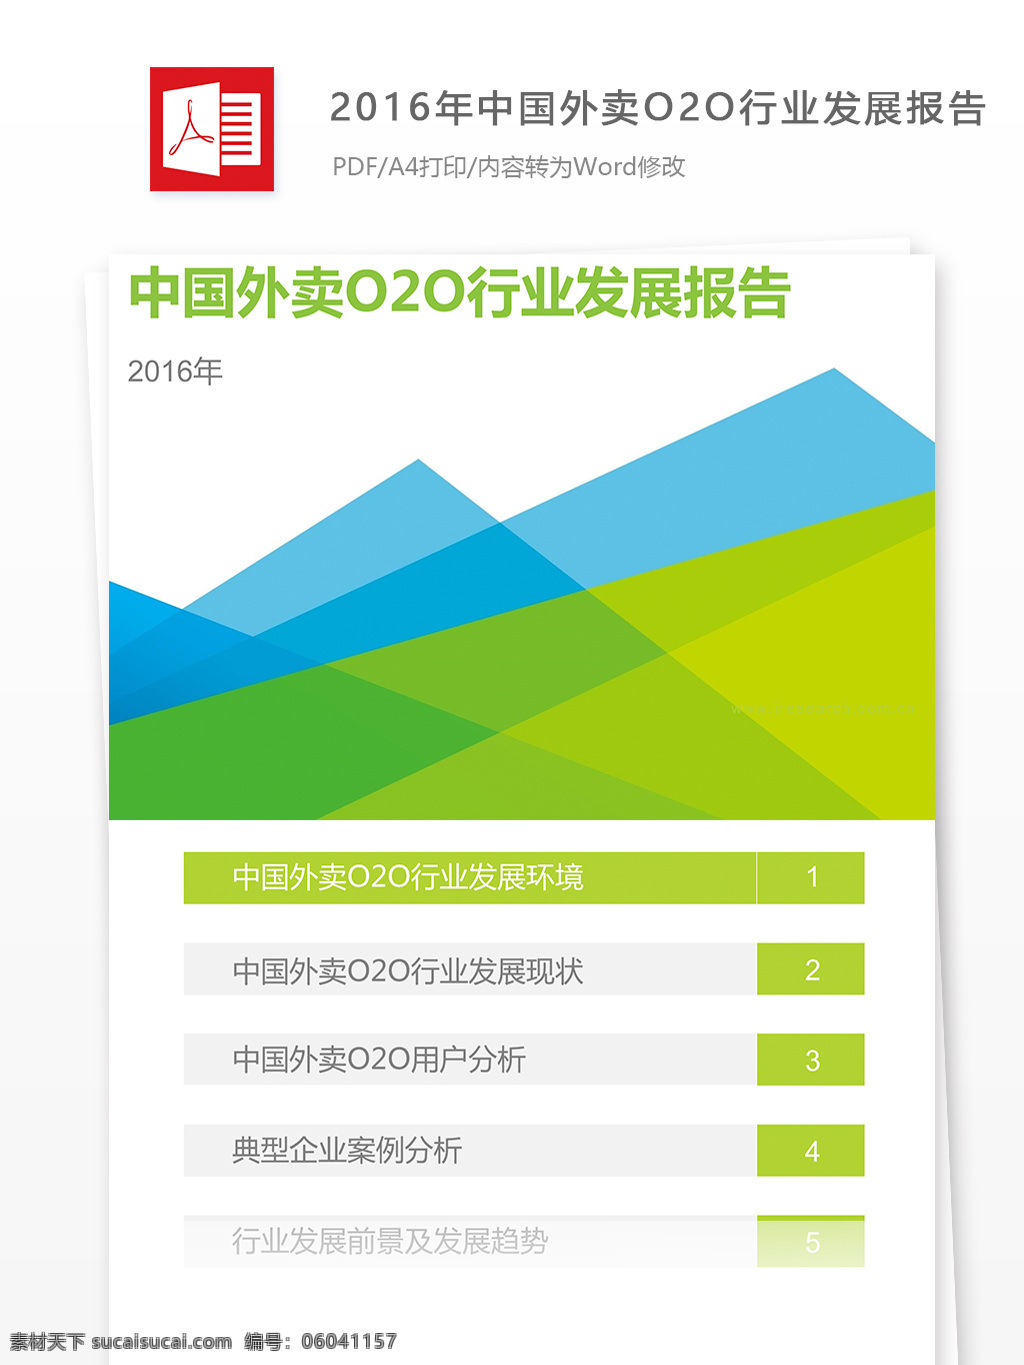 2016 年中 国 外卖 o2o 行业发展 报告 内容 格式